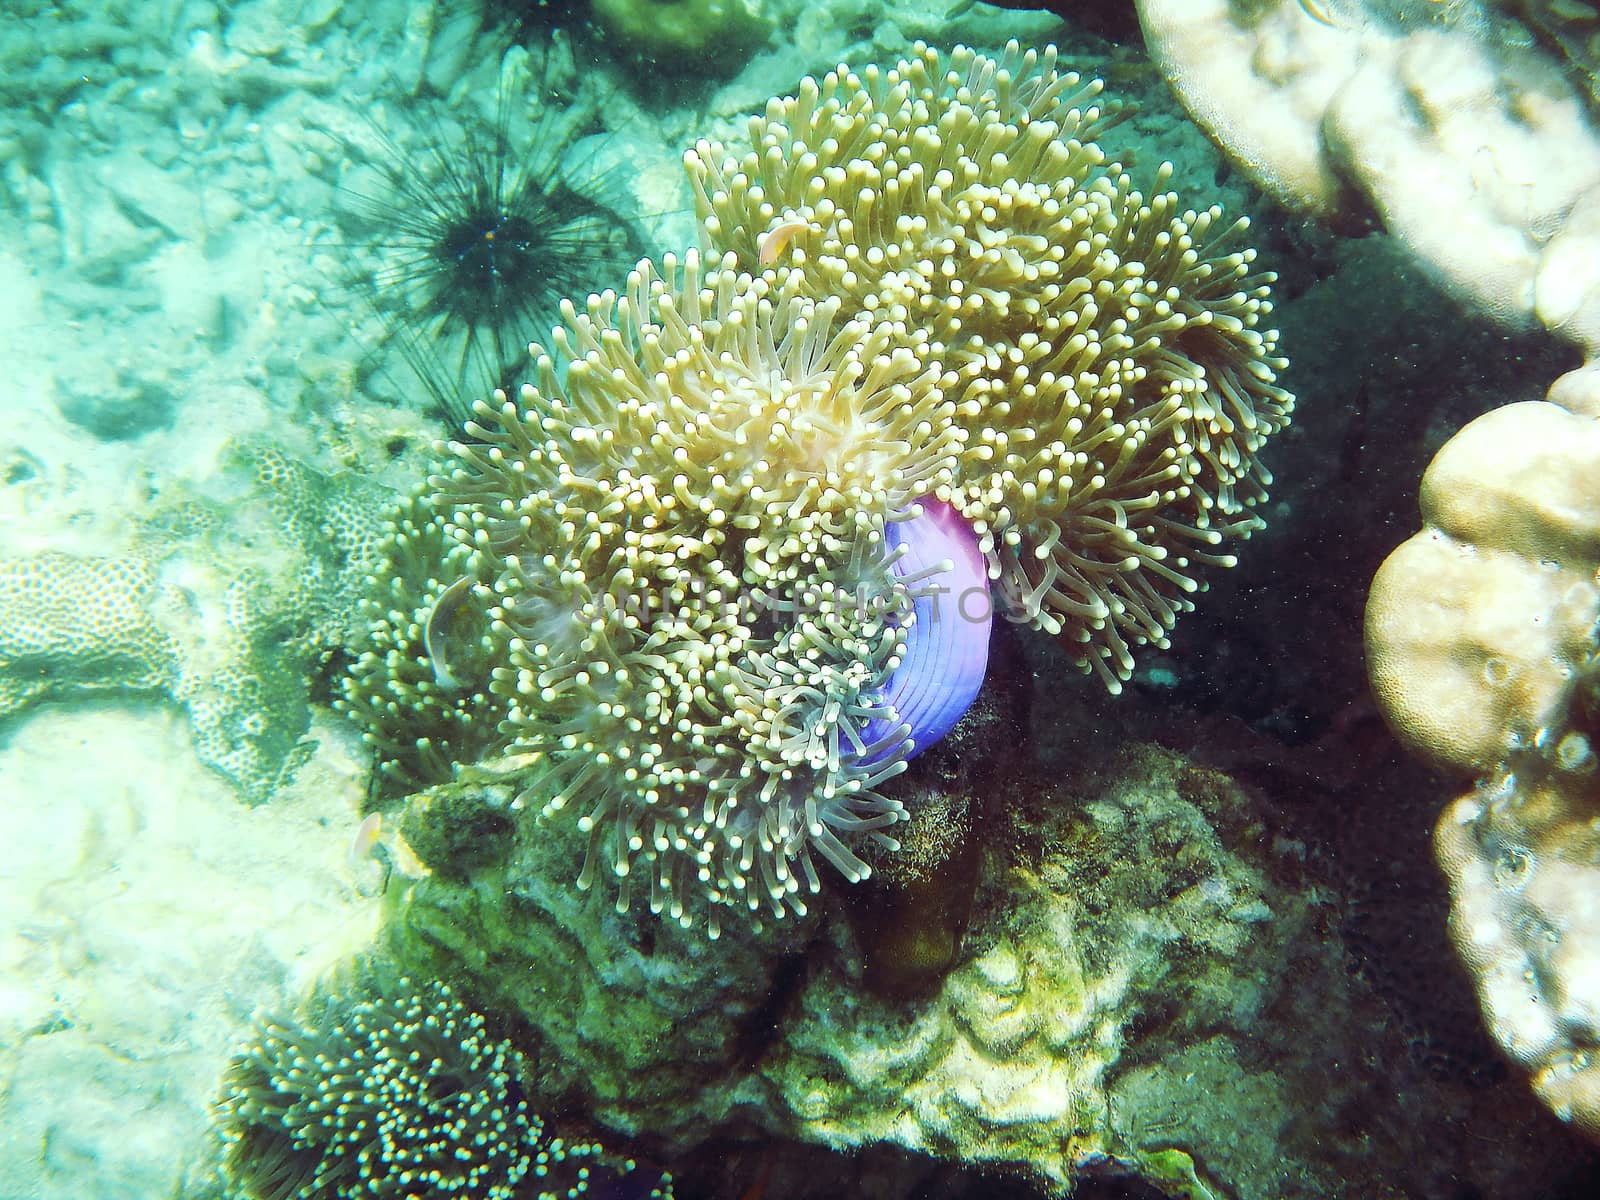 The Sea Anemones under the sea are invertebrates.